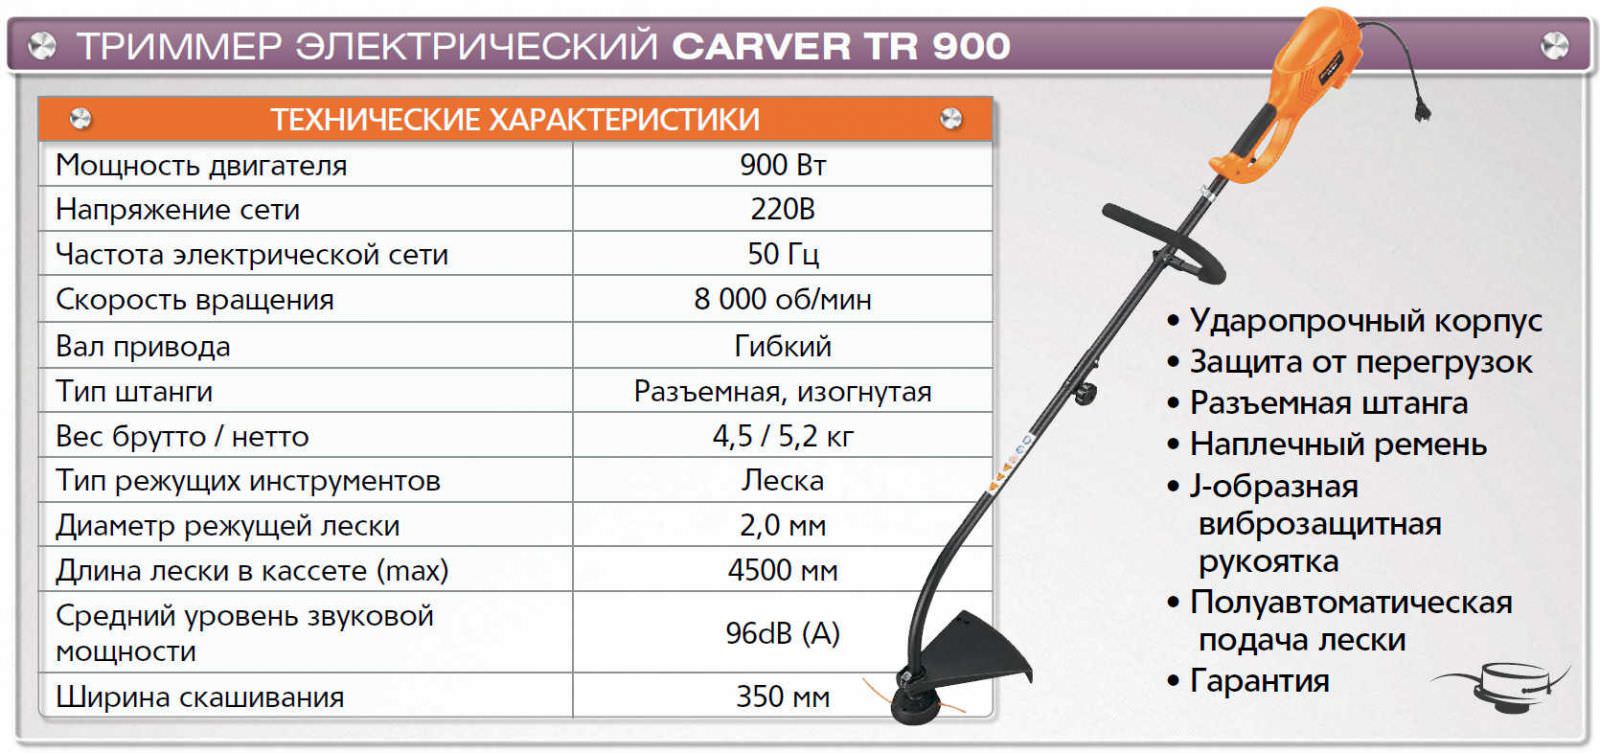 CARVER TR-900